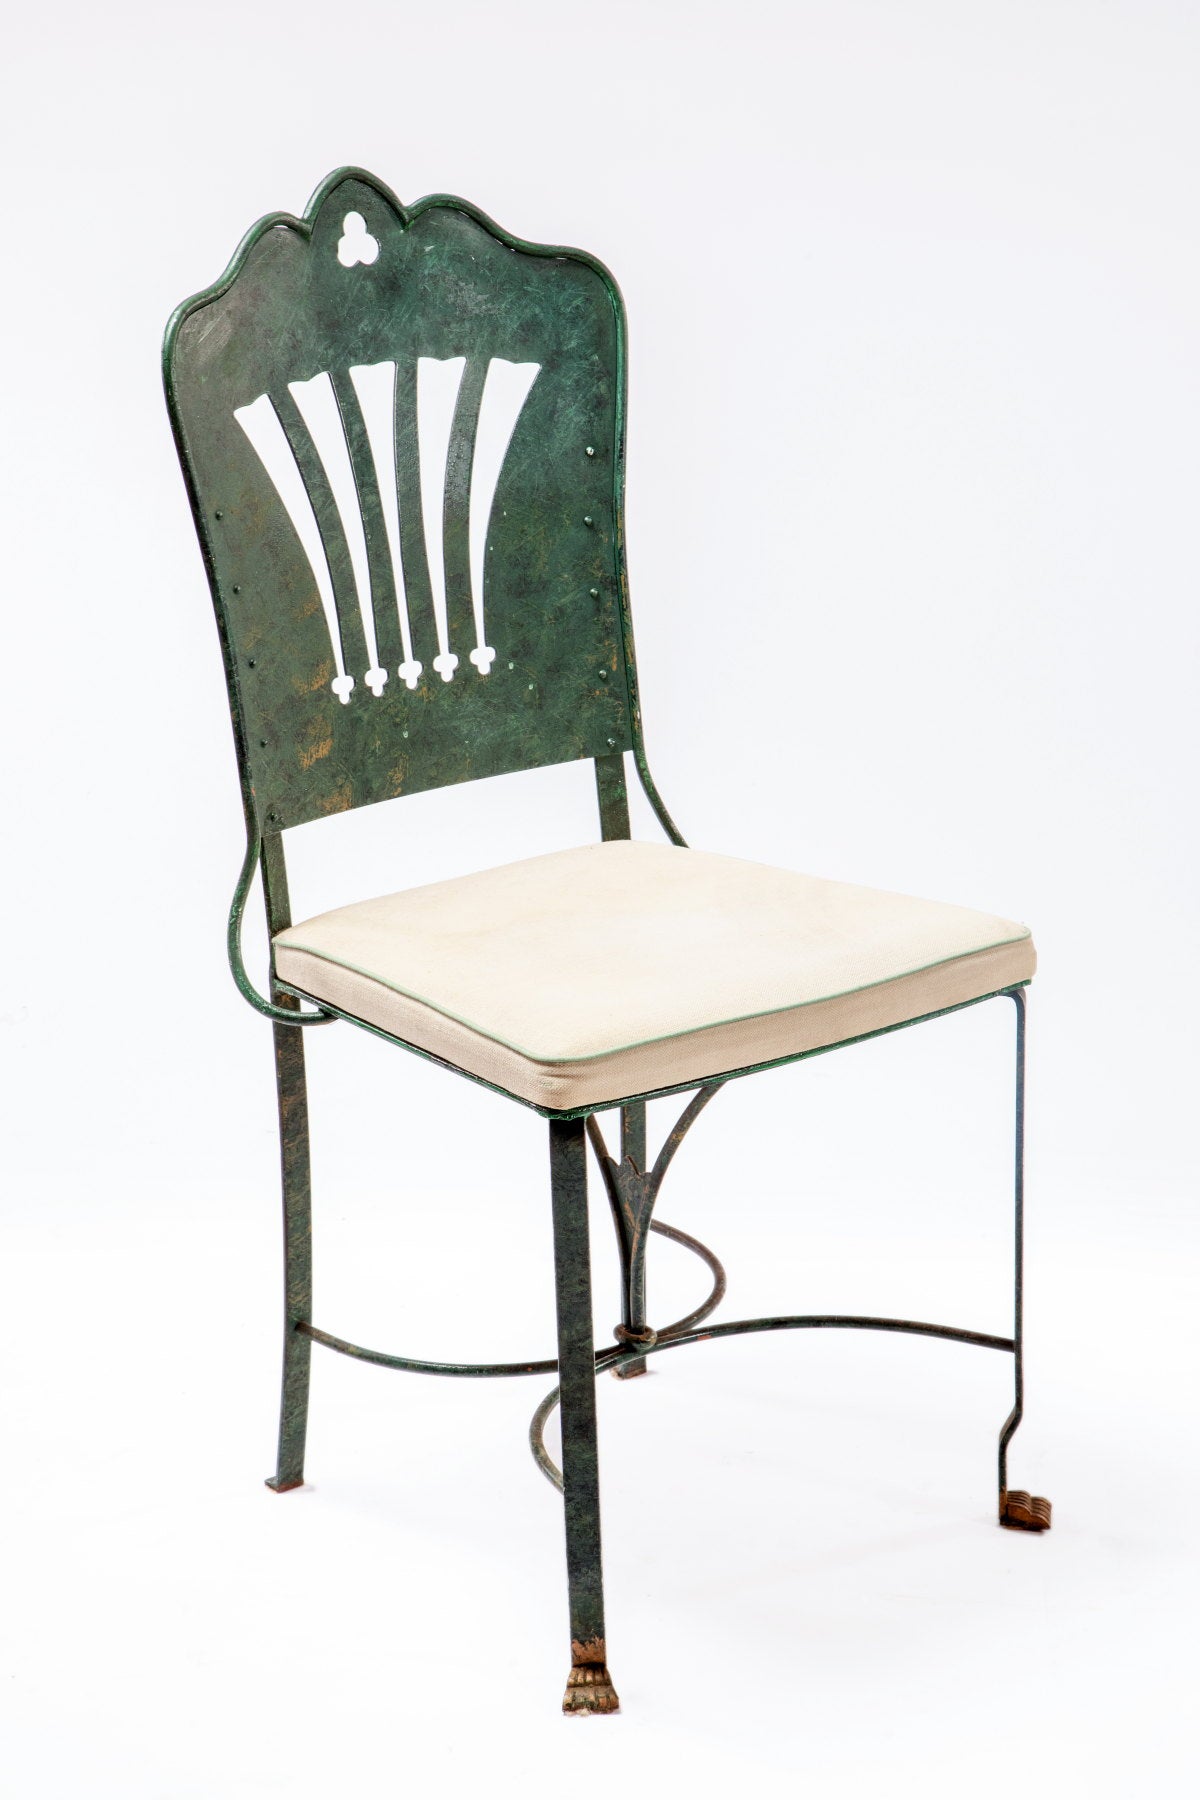 Quattro sedie ferro battuto verdi